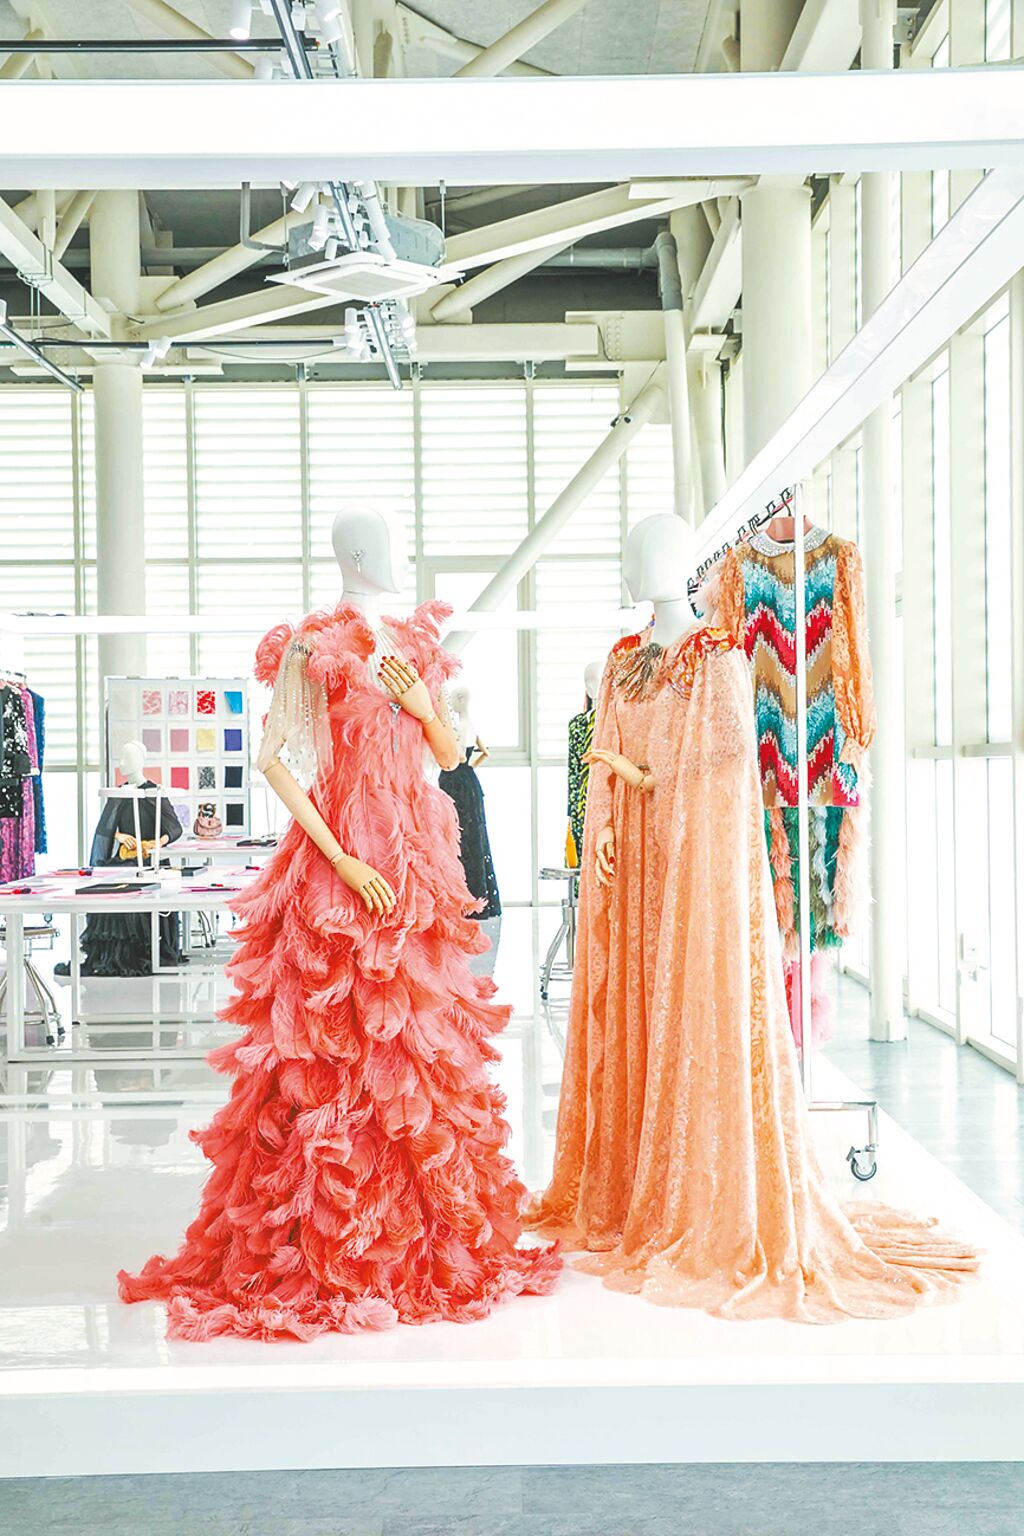 全场最高单价的粉肤色蕾丝斗篷刺绣晚礼服（右），同时也是独家礼服之一，整套工时约需5376小时手工制作，斗篷与晚礼服合计总价约660万元。（GUCCI提供）